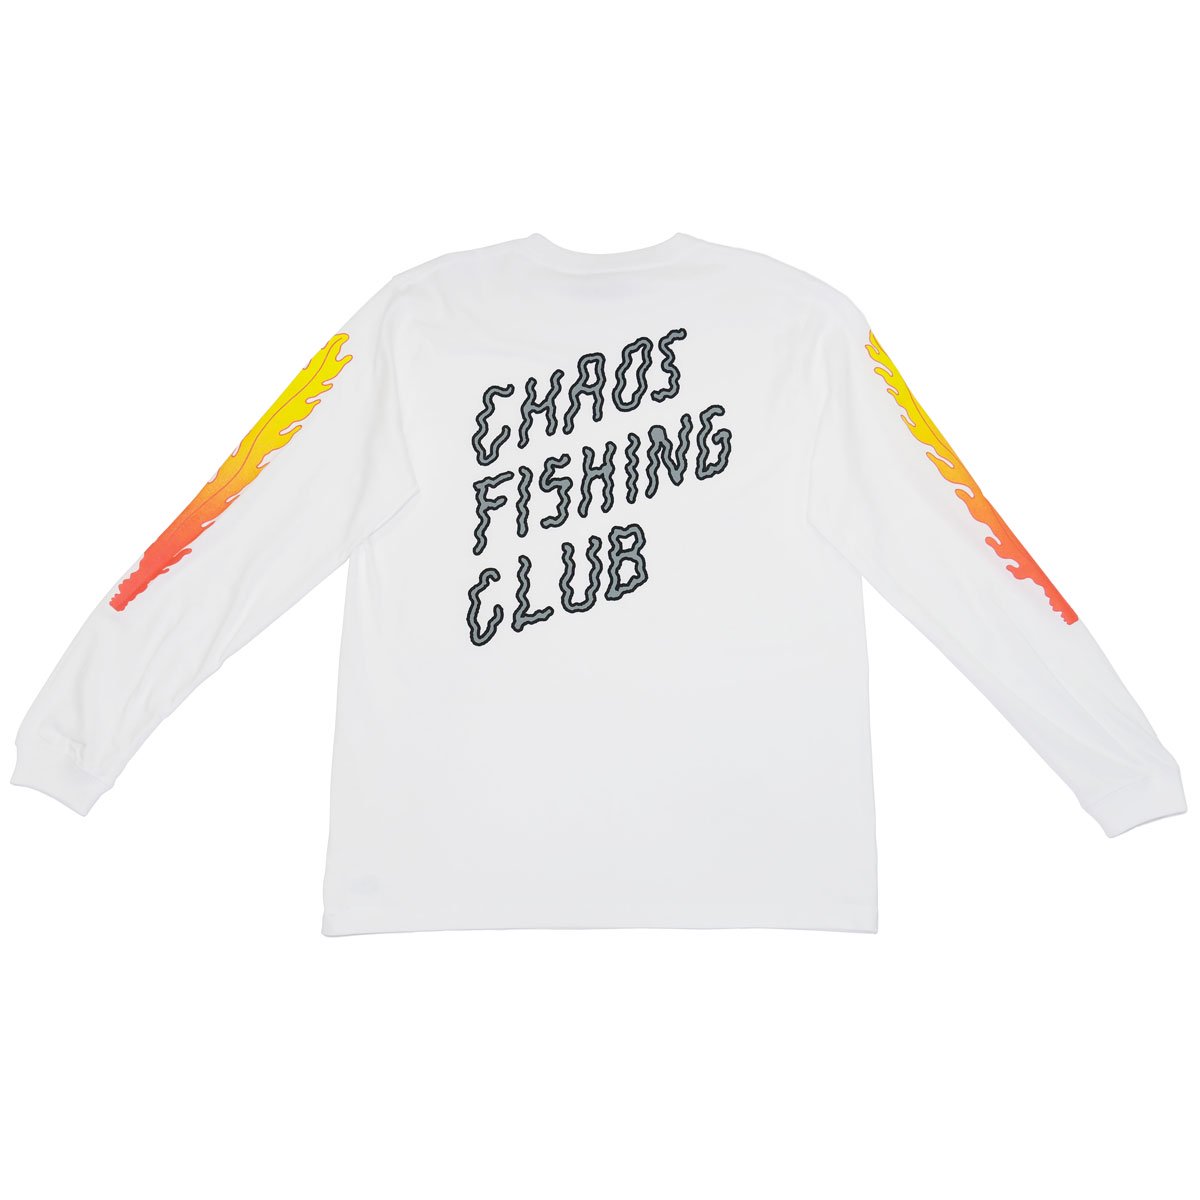 Chaos fishing club